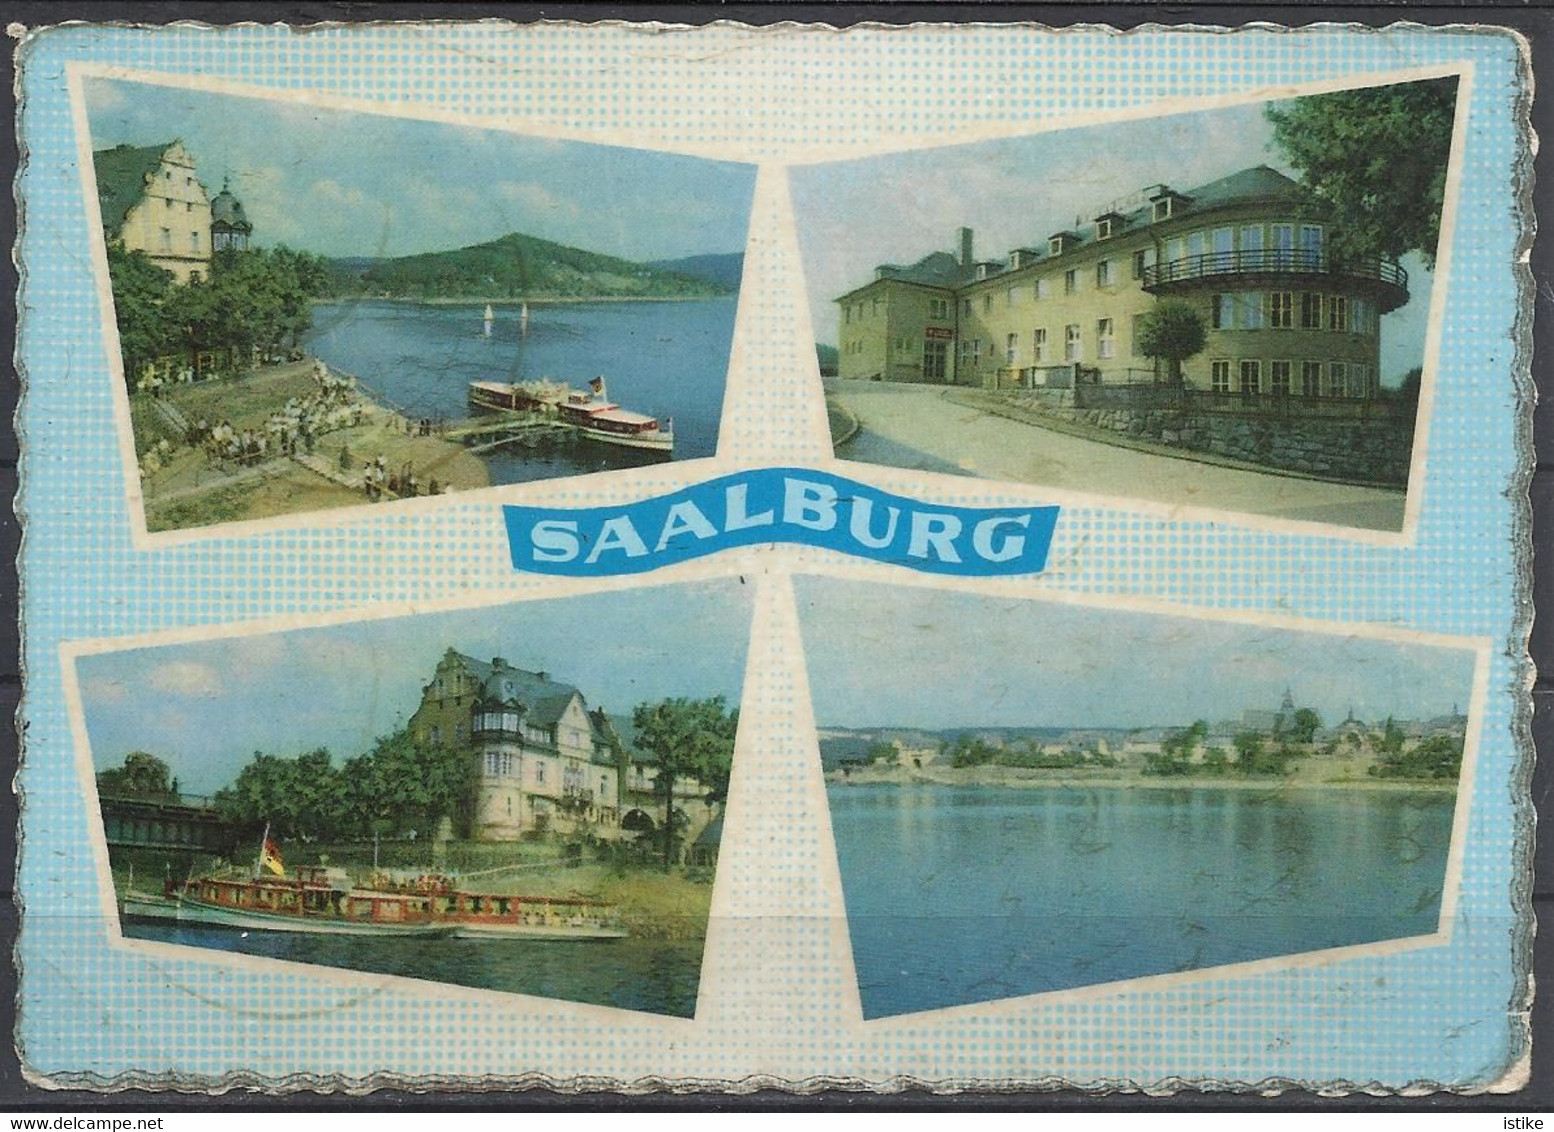 Germany, Saalburg, Multi View, 1960. - Saalburg